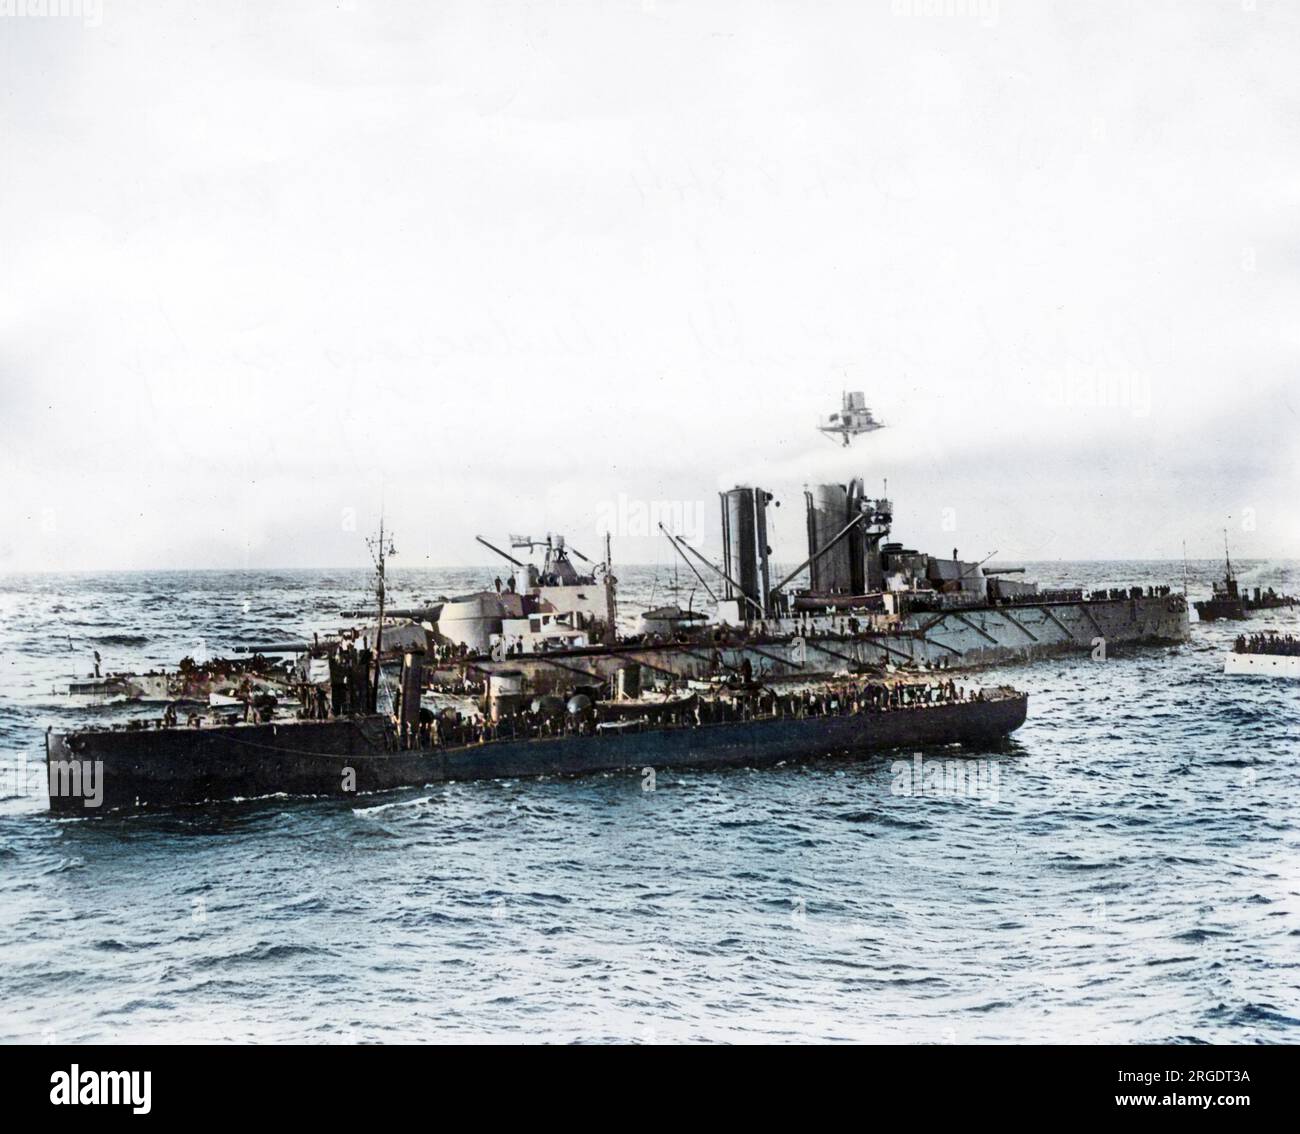 HMS Kühnheit, britisches Schlachtschiff der V-Klasse von King George, startete 1912. Während des Ersten Weltkriegs sah sie nichts, da sie von einer deutschen Mine vor der Nordküste von Donegal, Irland, versenkt wurde, wie auf diesem Foto zu sehen ist. Die Besatzung fährt zu den Rettungsbooten und andere Schiffe kommen zur Rettung. Stockfoto